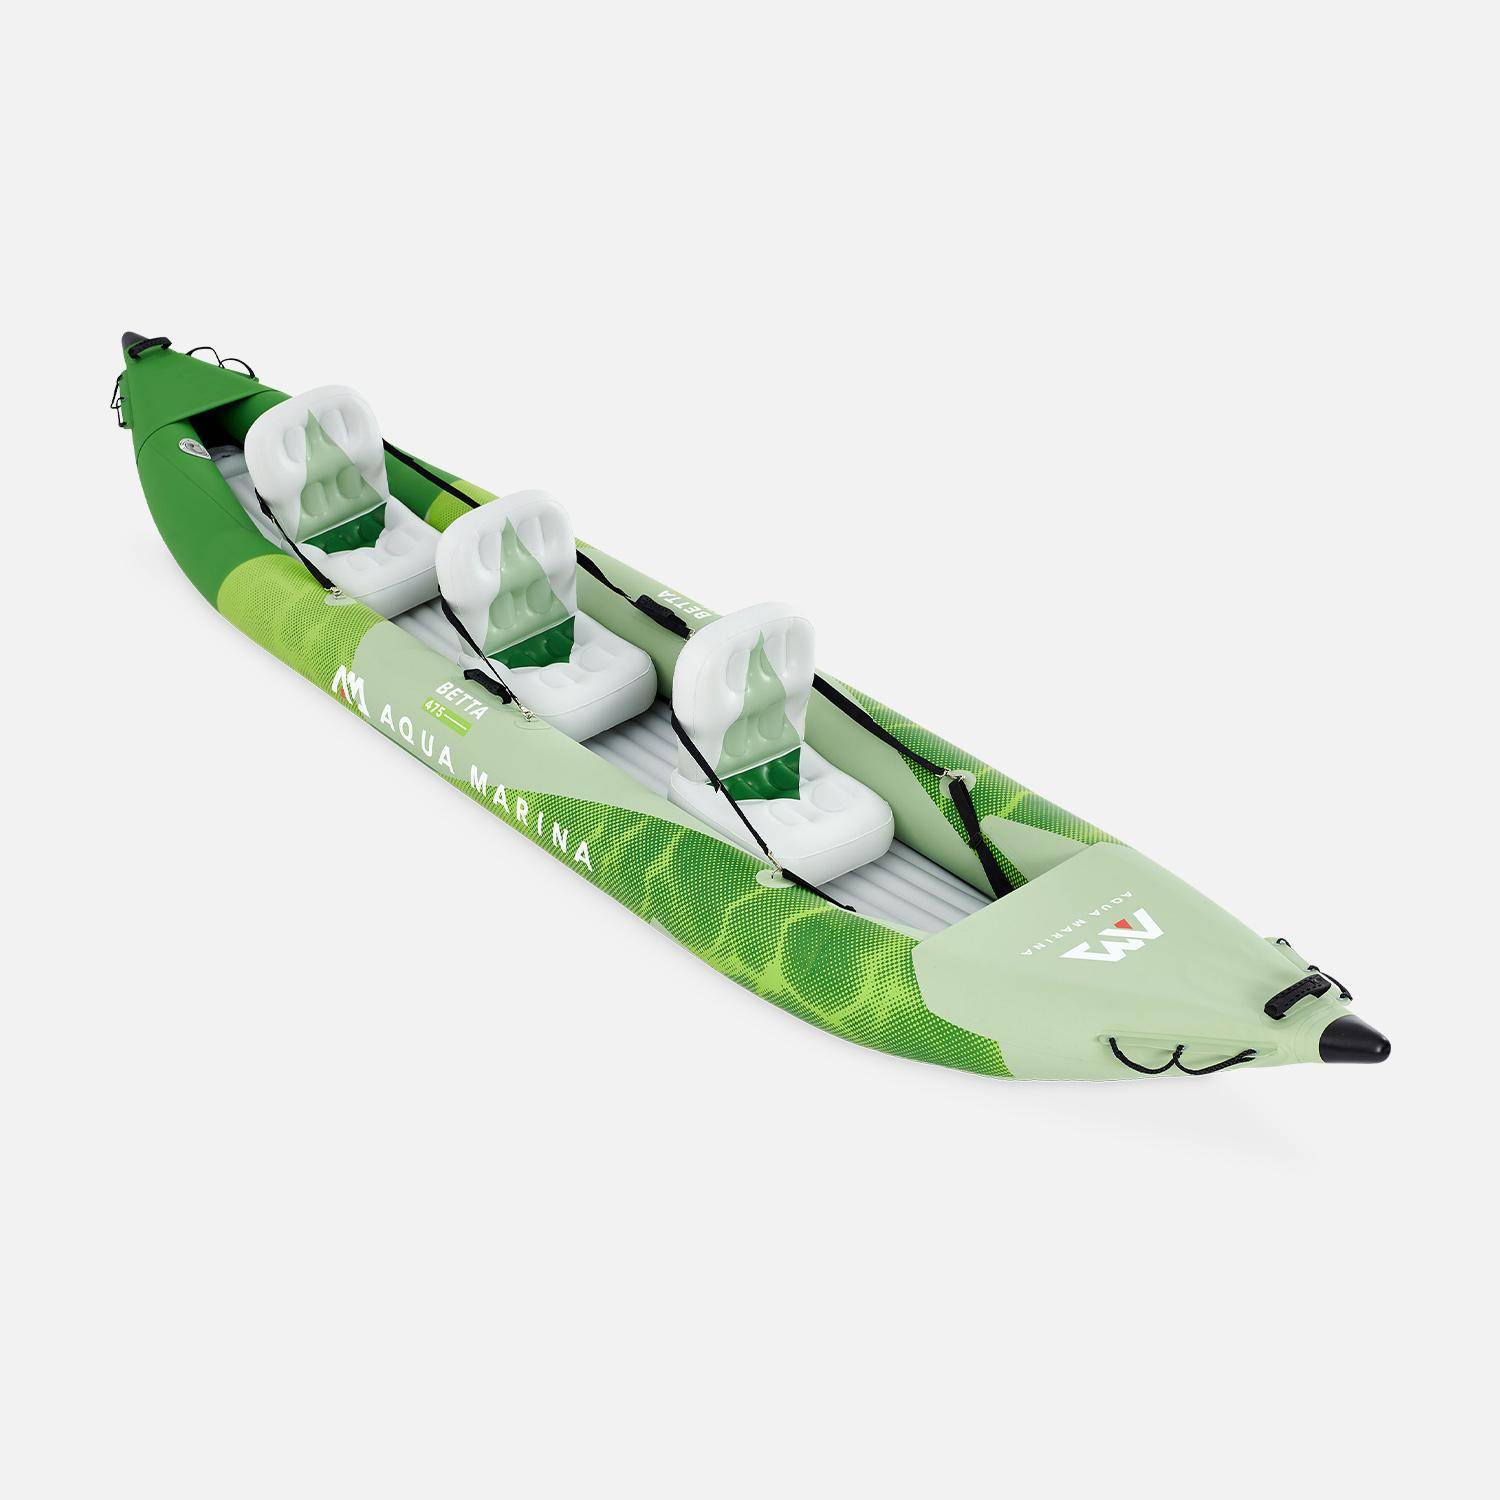 Canoë kayak Betta 3P gonflable trois places 15’7" avec pompe haute pression, sac de rangement et doubles pagaies Photo4